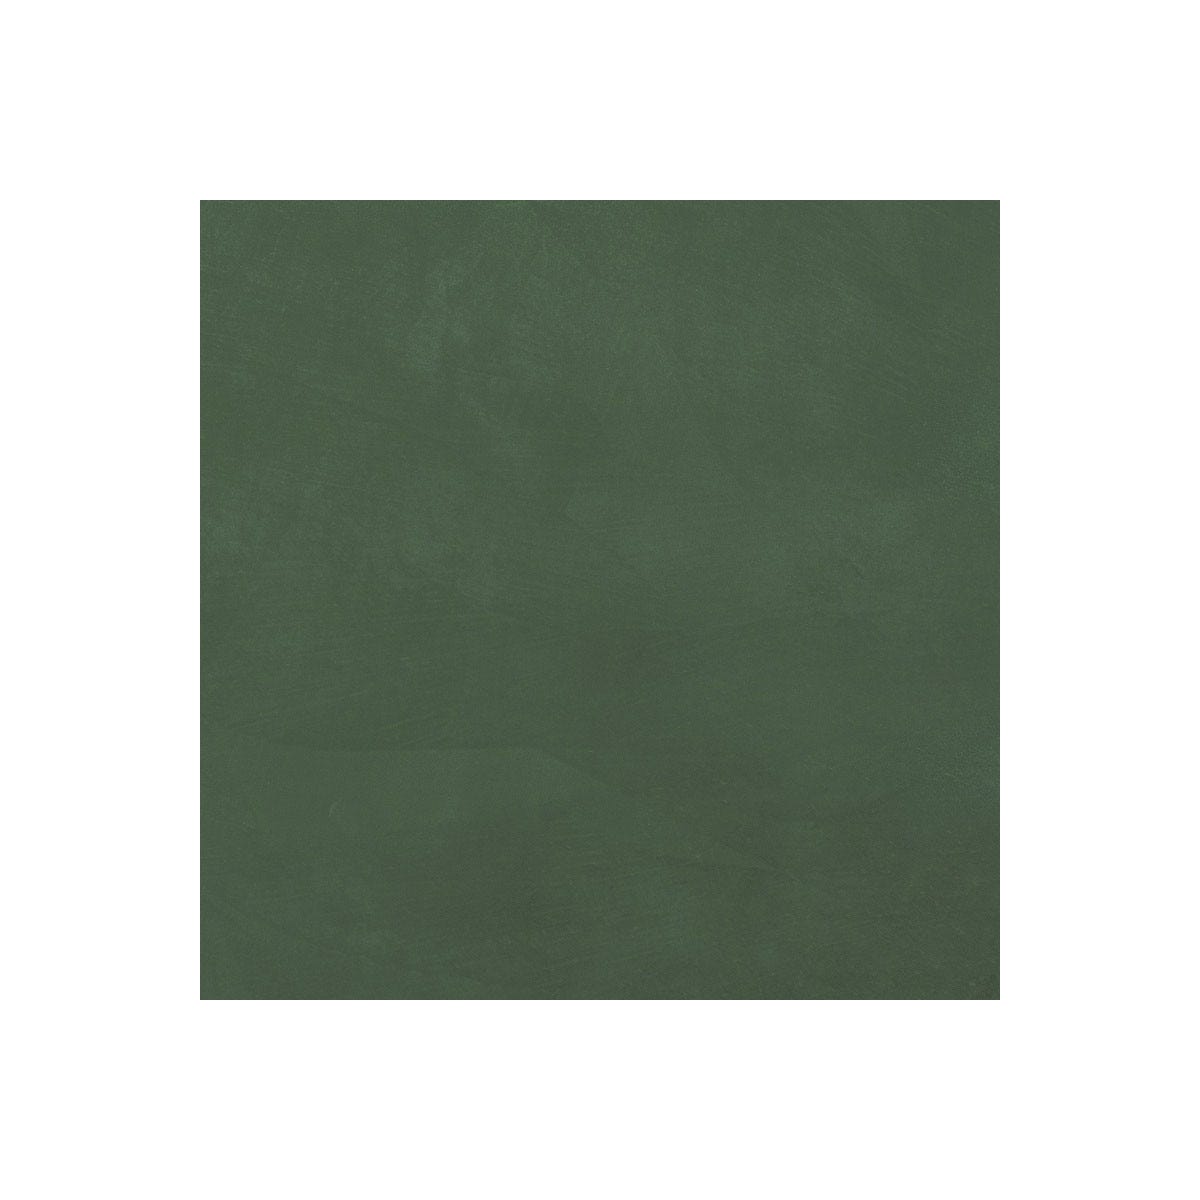 BETON CIRE CARRELAGE POUR SOLS ET MURS - KIT BETON CIRE SUR CARRELAGE - 5 m² (en 2 couches) - Carambole Vert - ARCANE INDUSTRIES 1